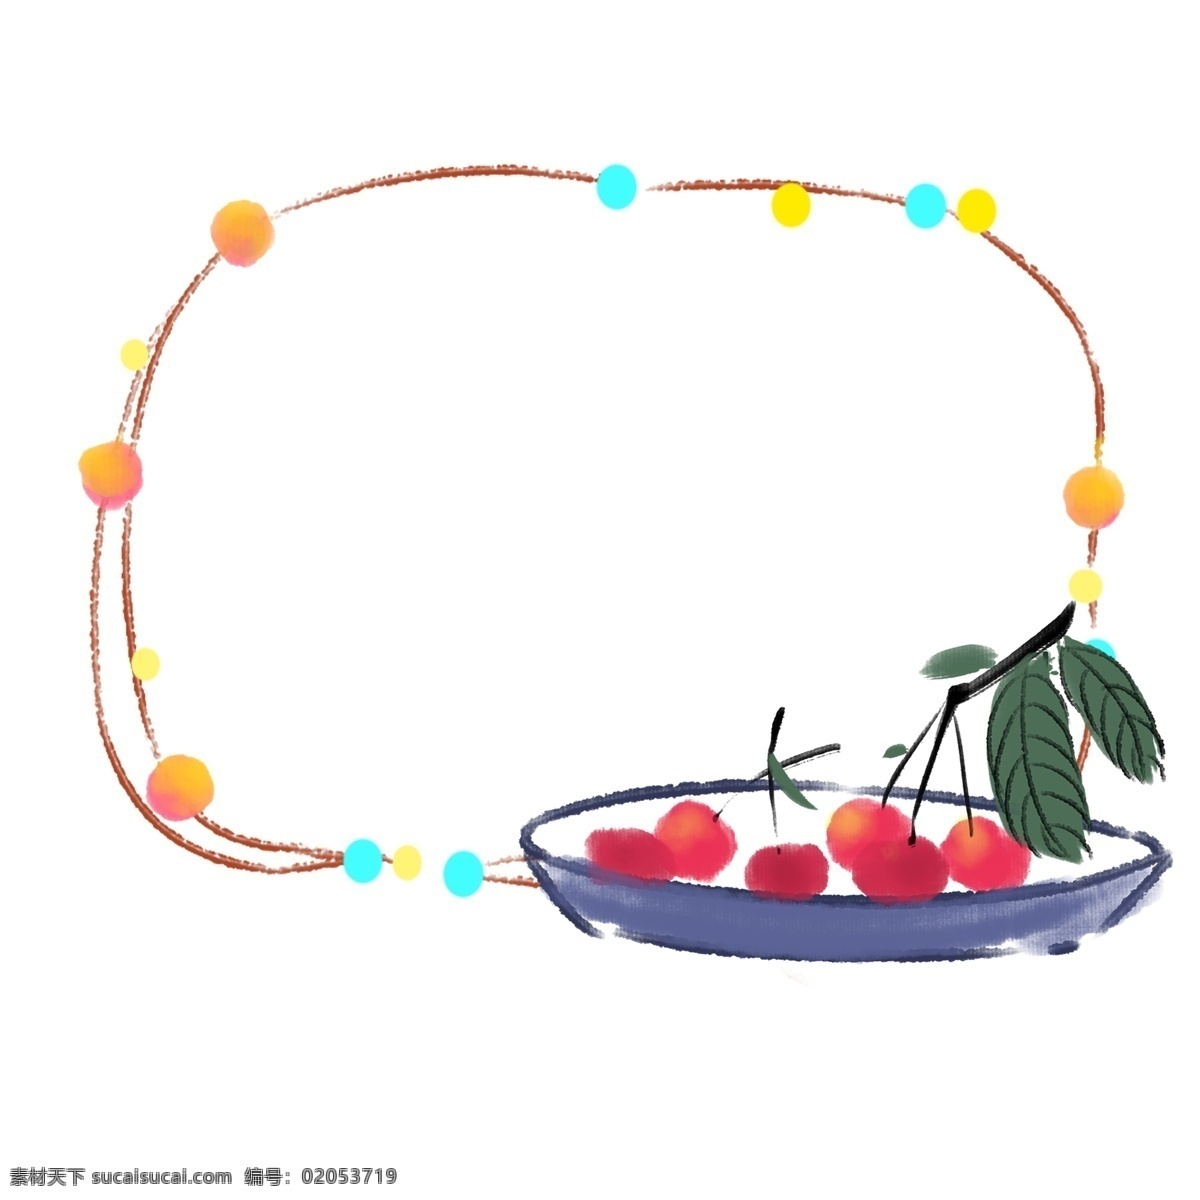 盘 新鲜 水果 装饰 边框 彩色 圆 一盘水果边框 红色水果 绿色叶子 不规则 立夏 插画